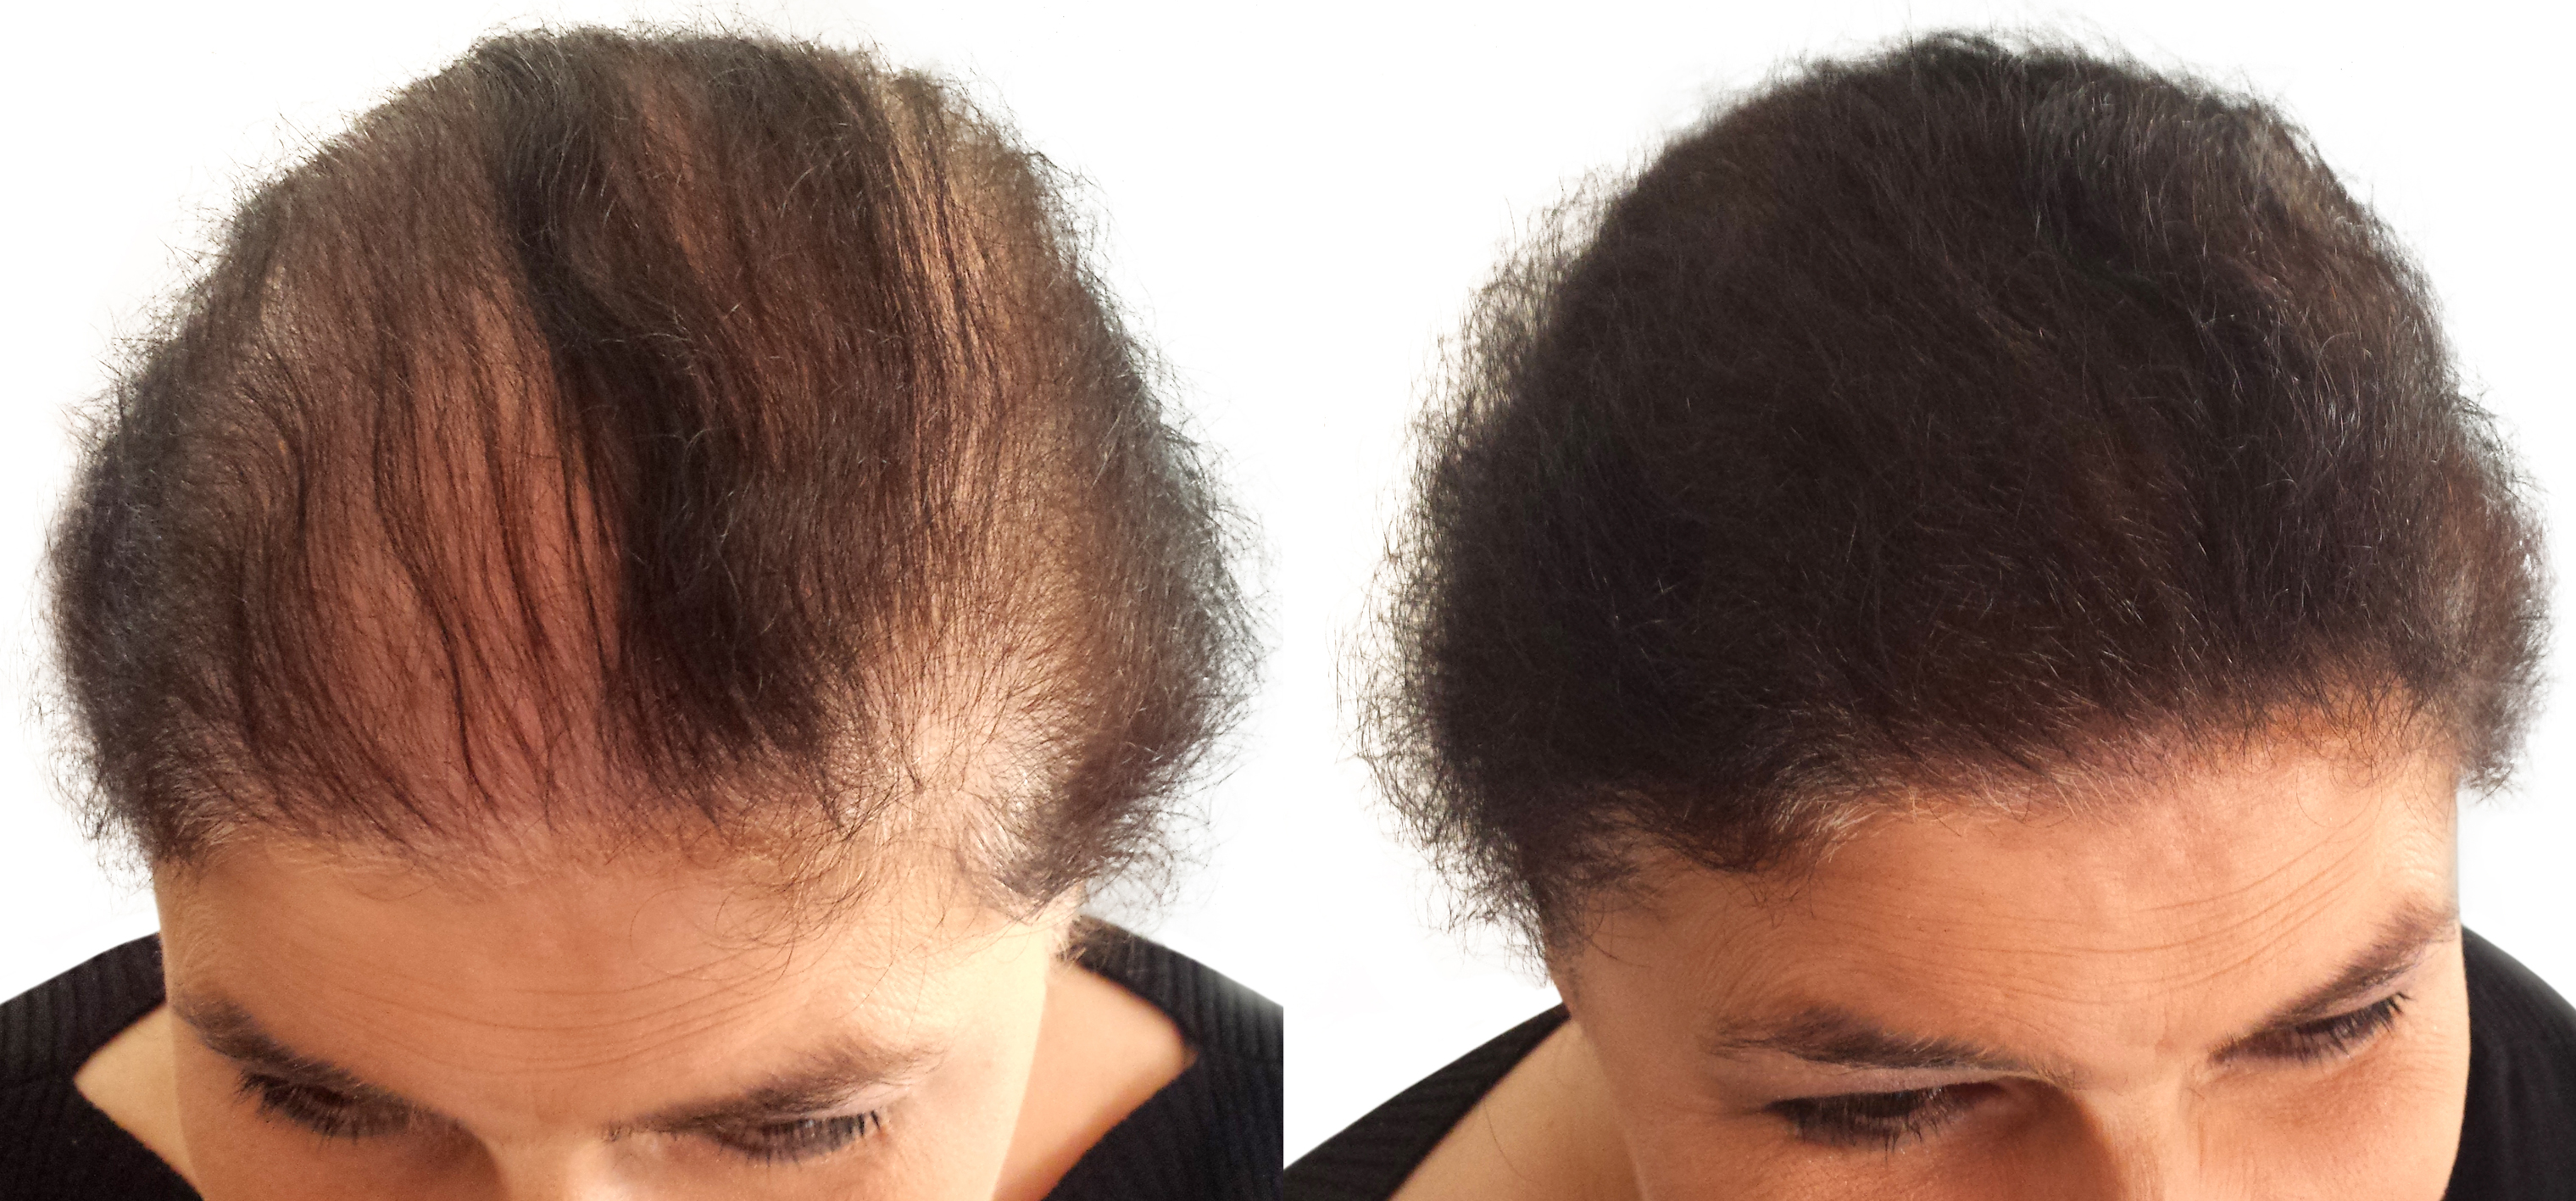 Отзывы врачей выпадение волос. Мезотерапия волос до и после. Волосы до после облысение. Пробор при выпадении волос.